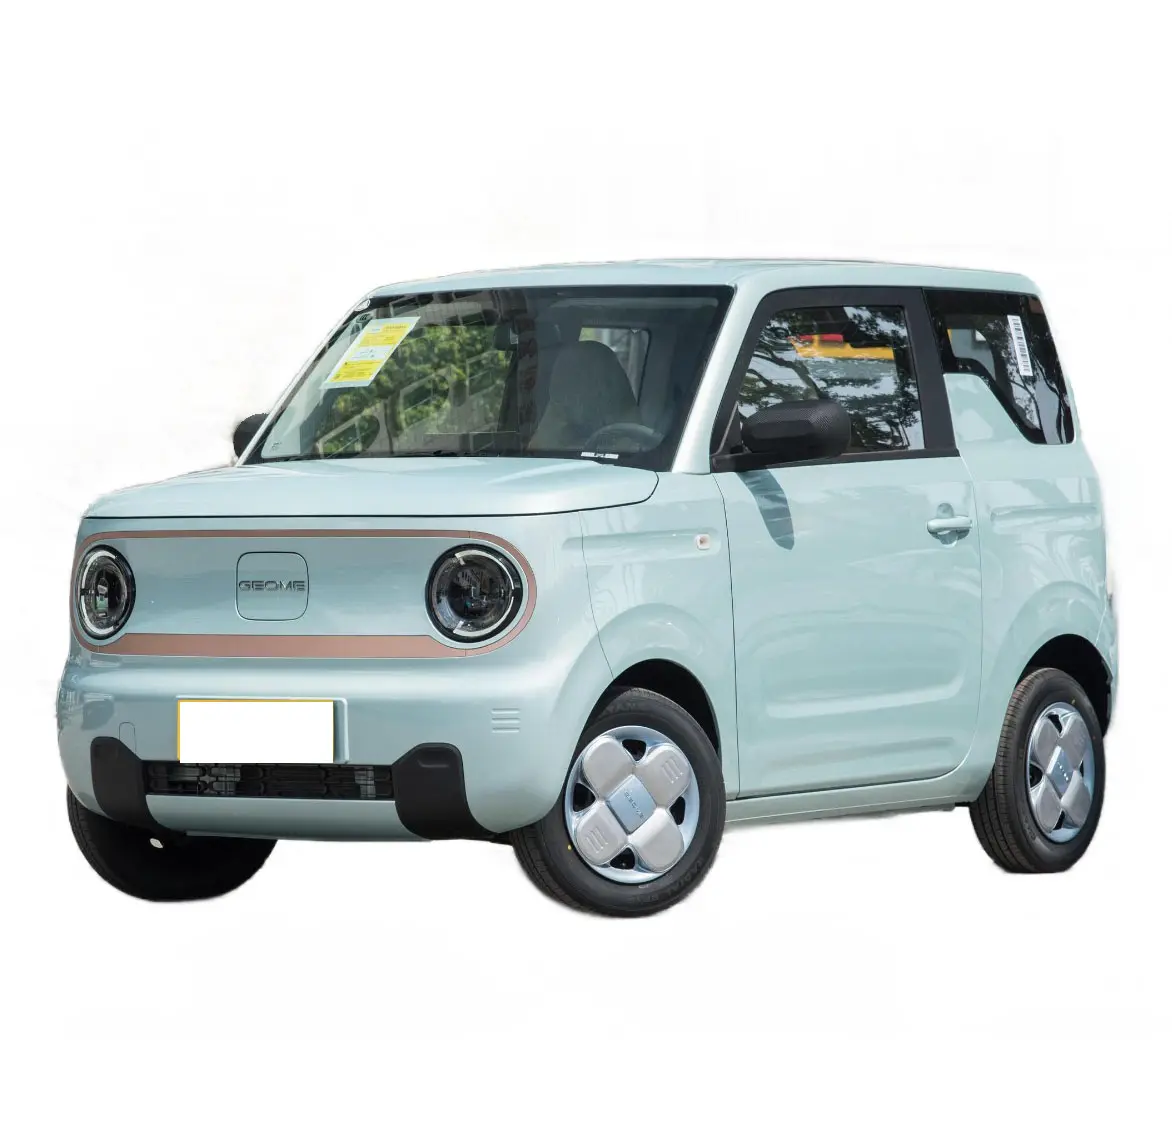 2023 Новый мини-автомобиль Geely Panda 27Ps Максимальная скорость 100 км/ч Новая Энергия небольших электромобилей